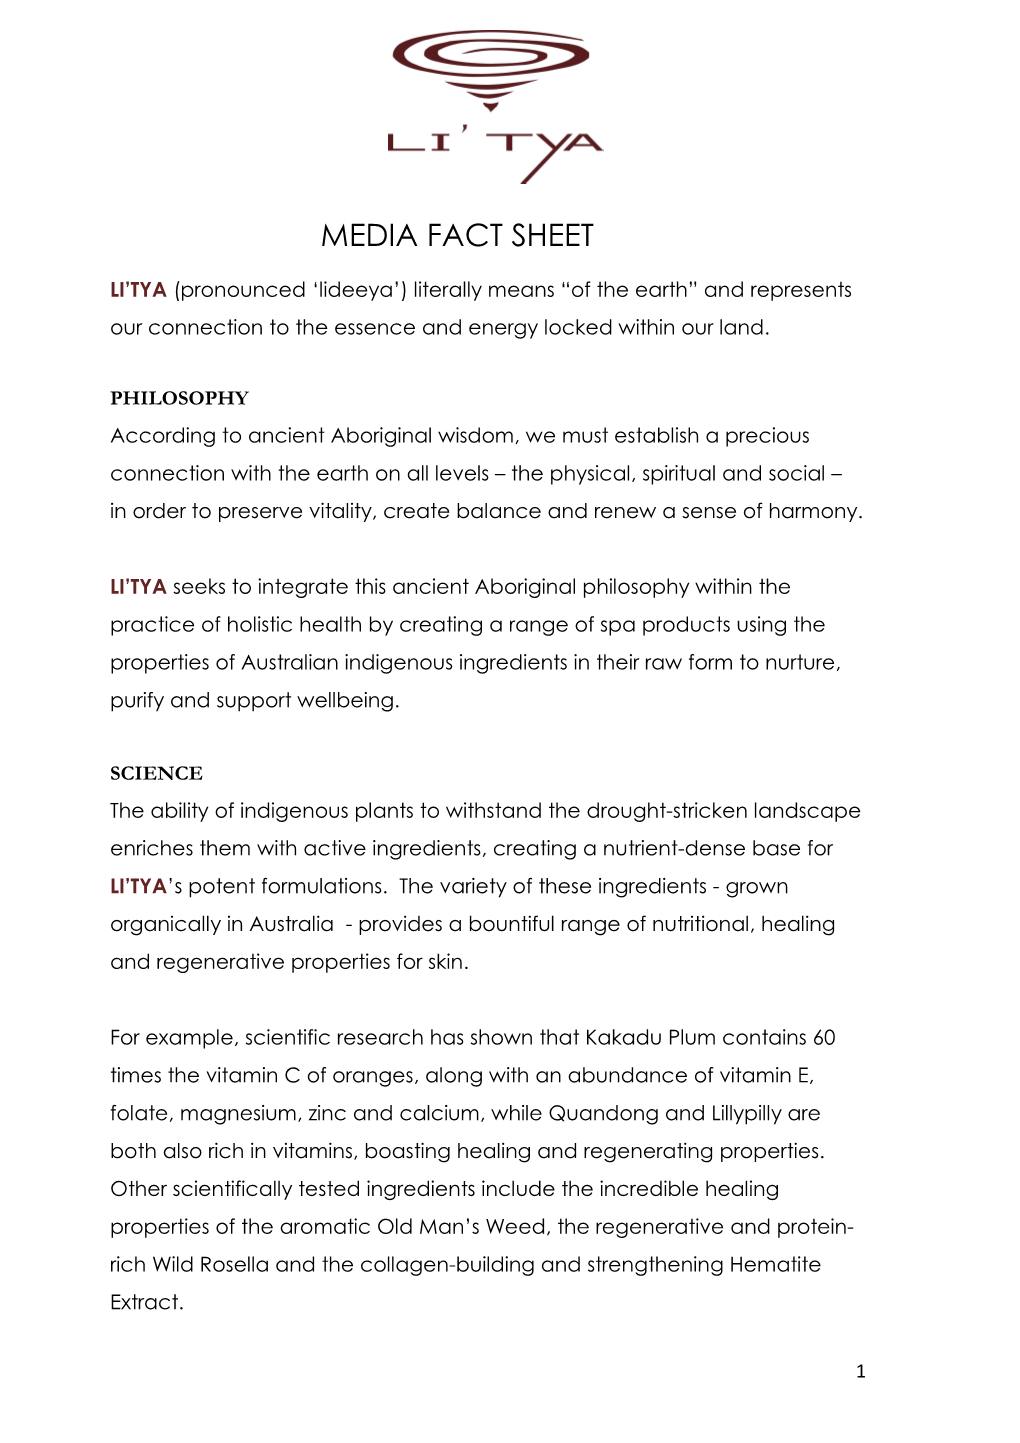 Media Fact Sheet